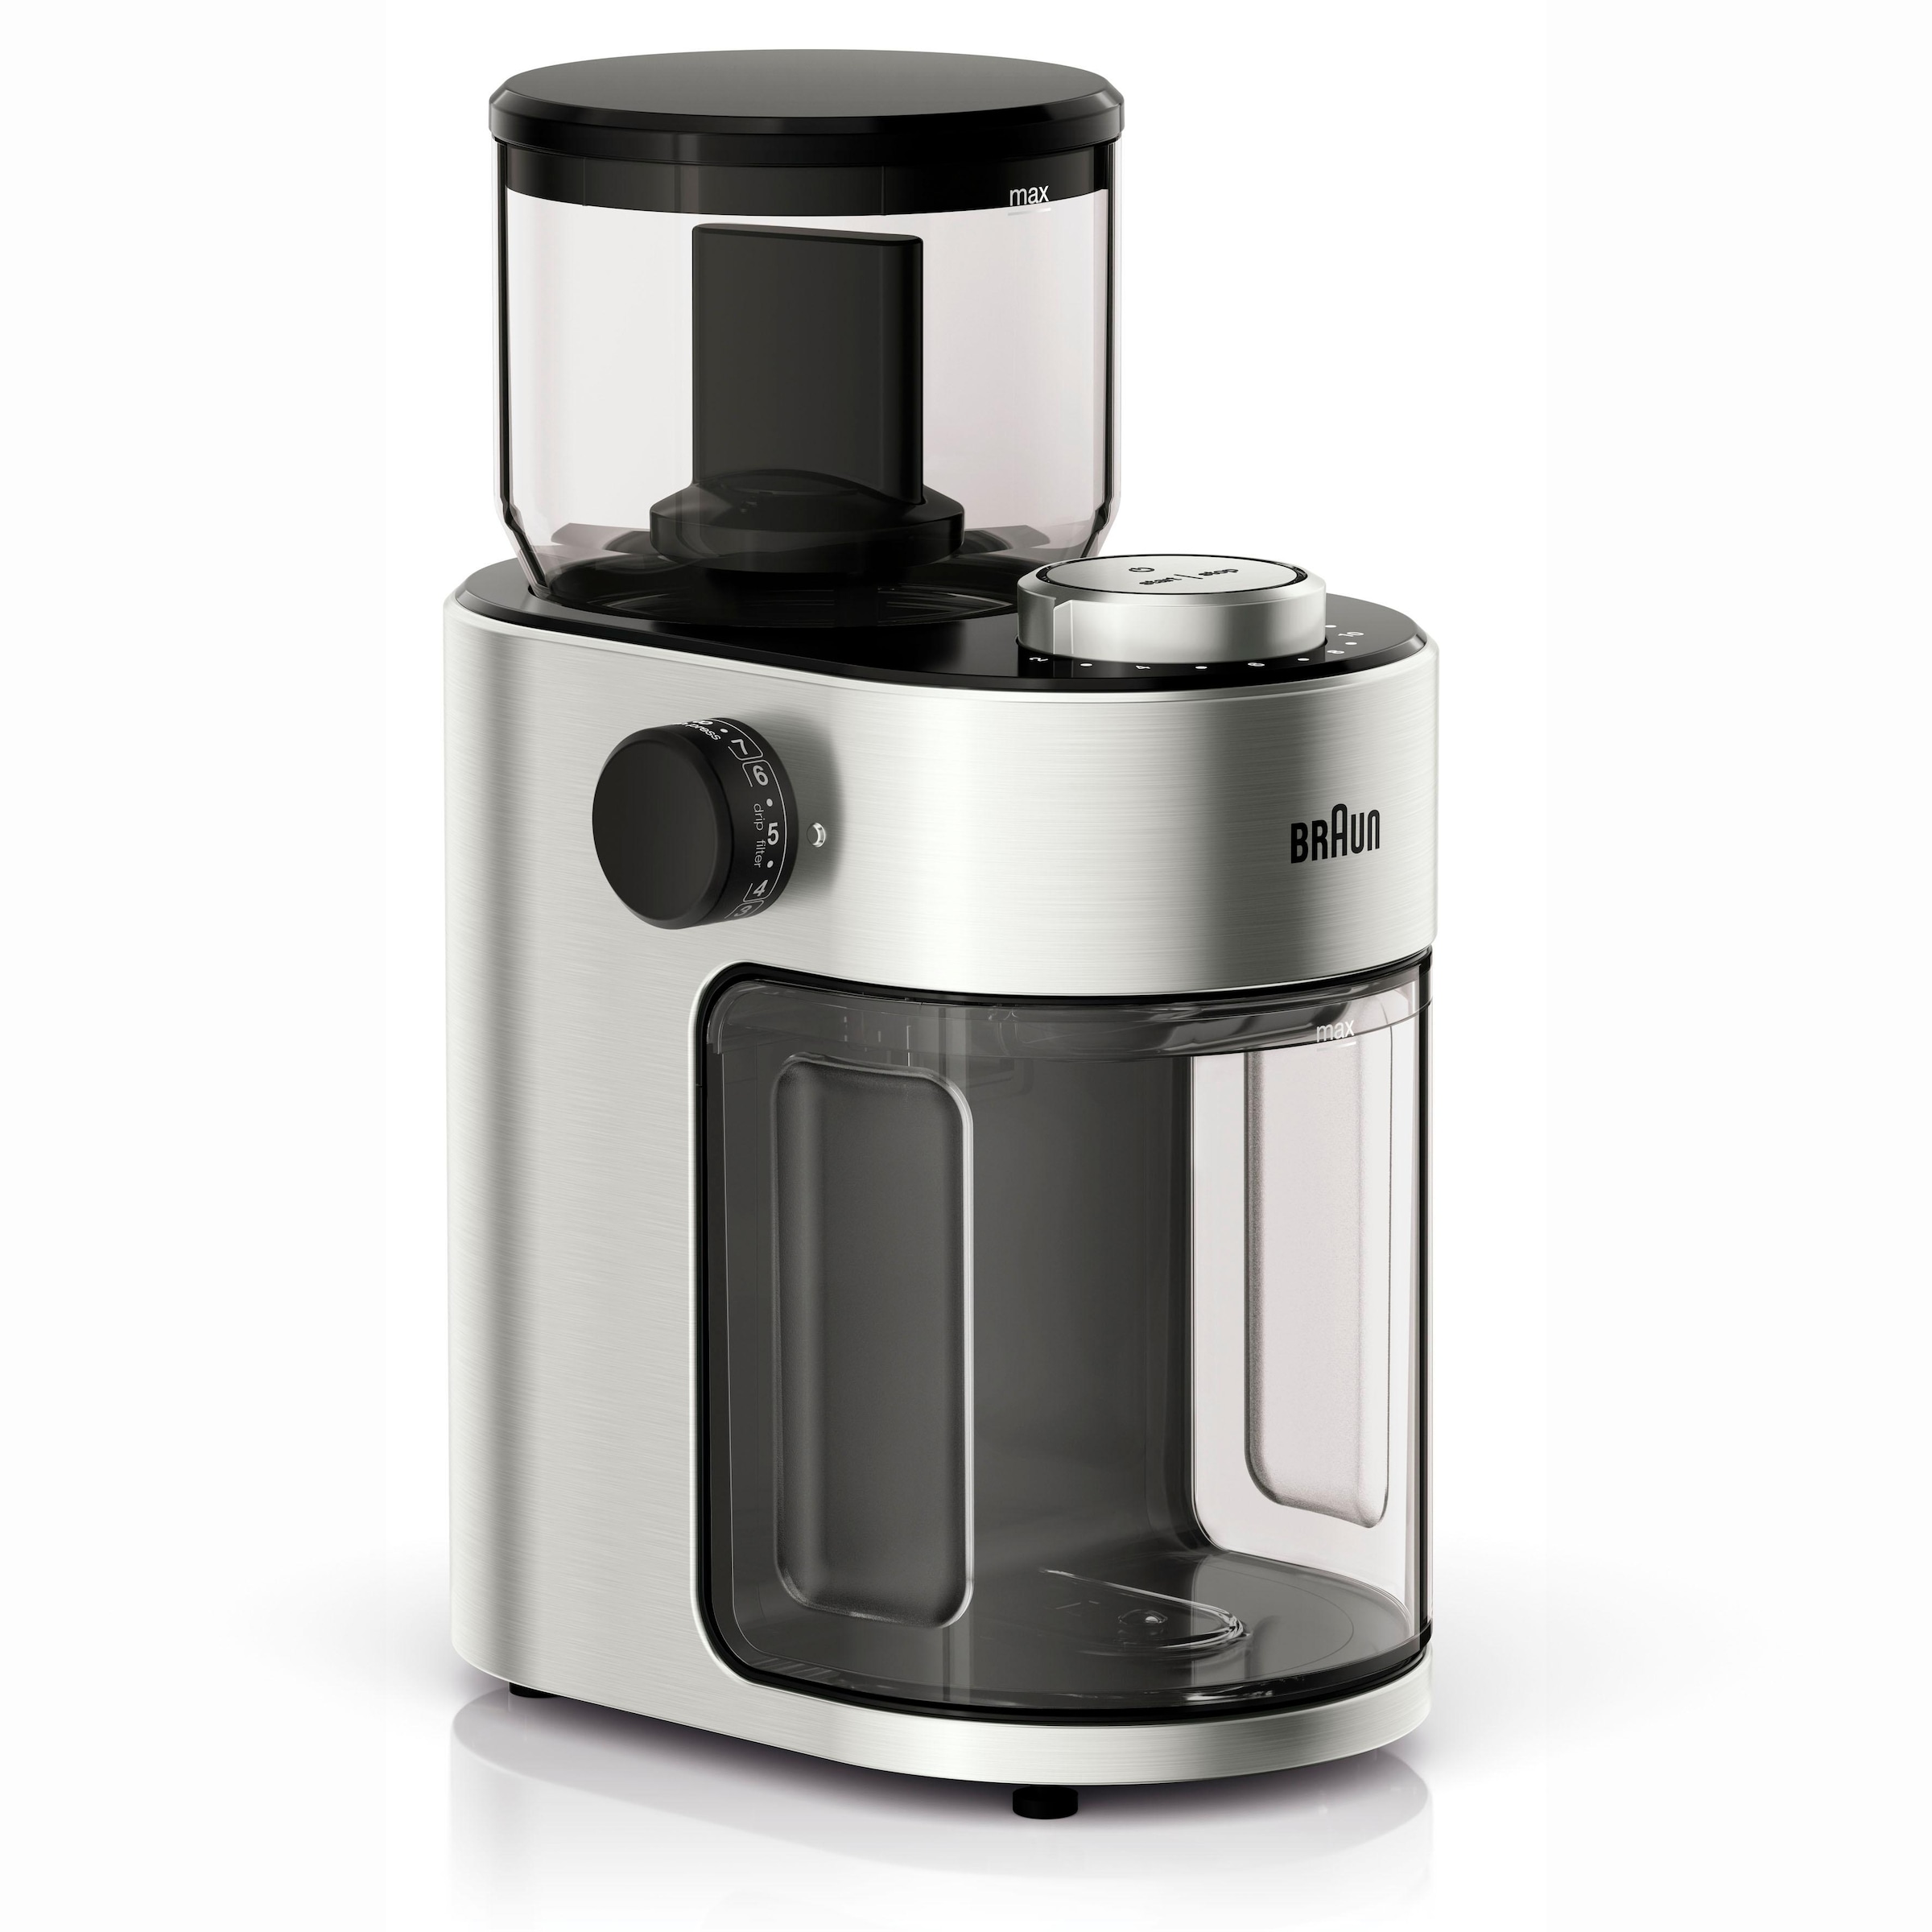 Braun Kaffeemühle »Kaffeemühle FreshSet KG7070«, 110 W, Scheibenmahlwerk, 220 g Bohnenbehälter, mit Überhitzungsschutz